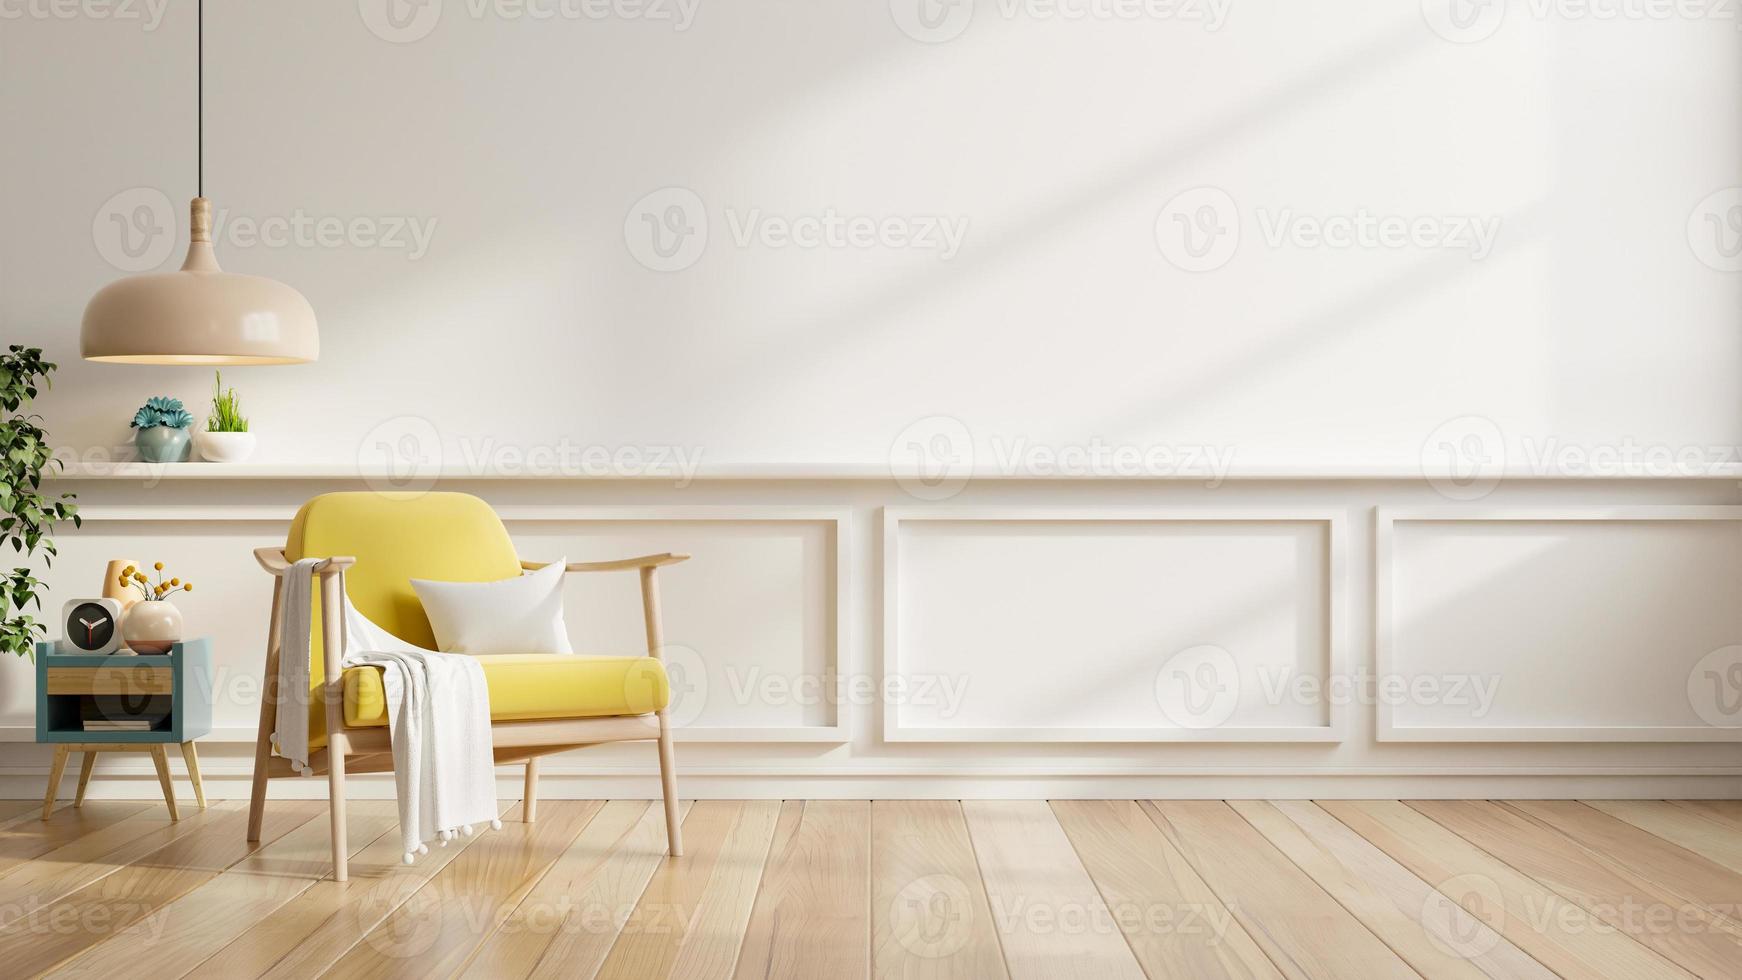 mur de couleur blanche maquette dans des tons chauds avec fauteuil jaune et décoration minimale. rendu 3d photo